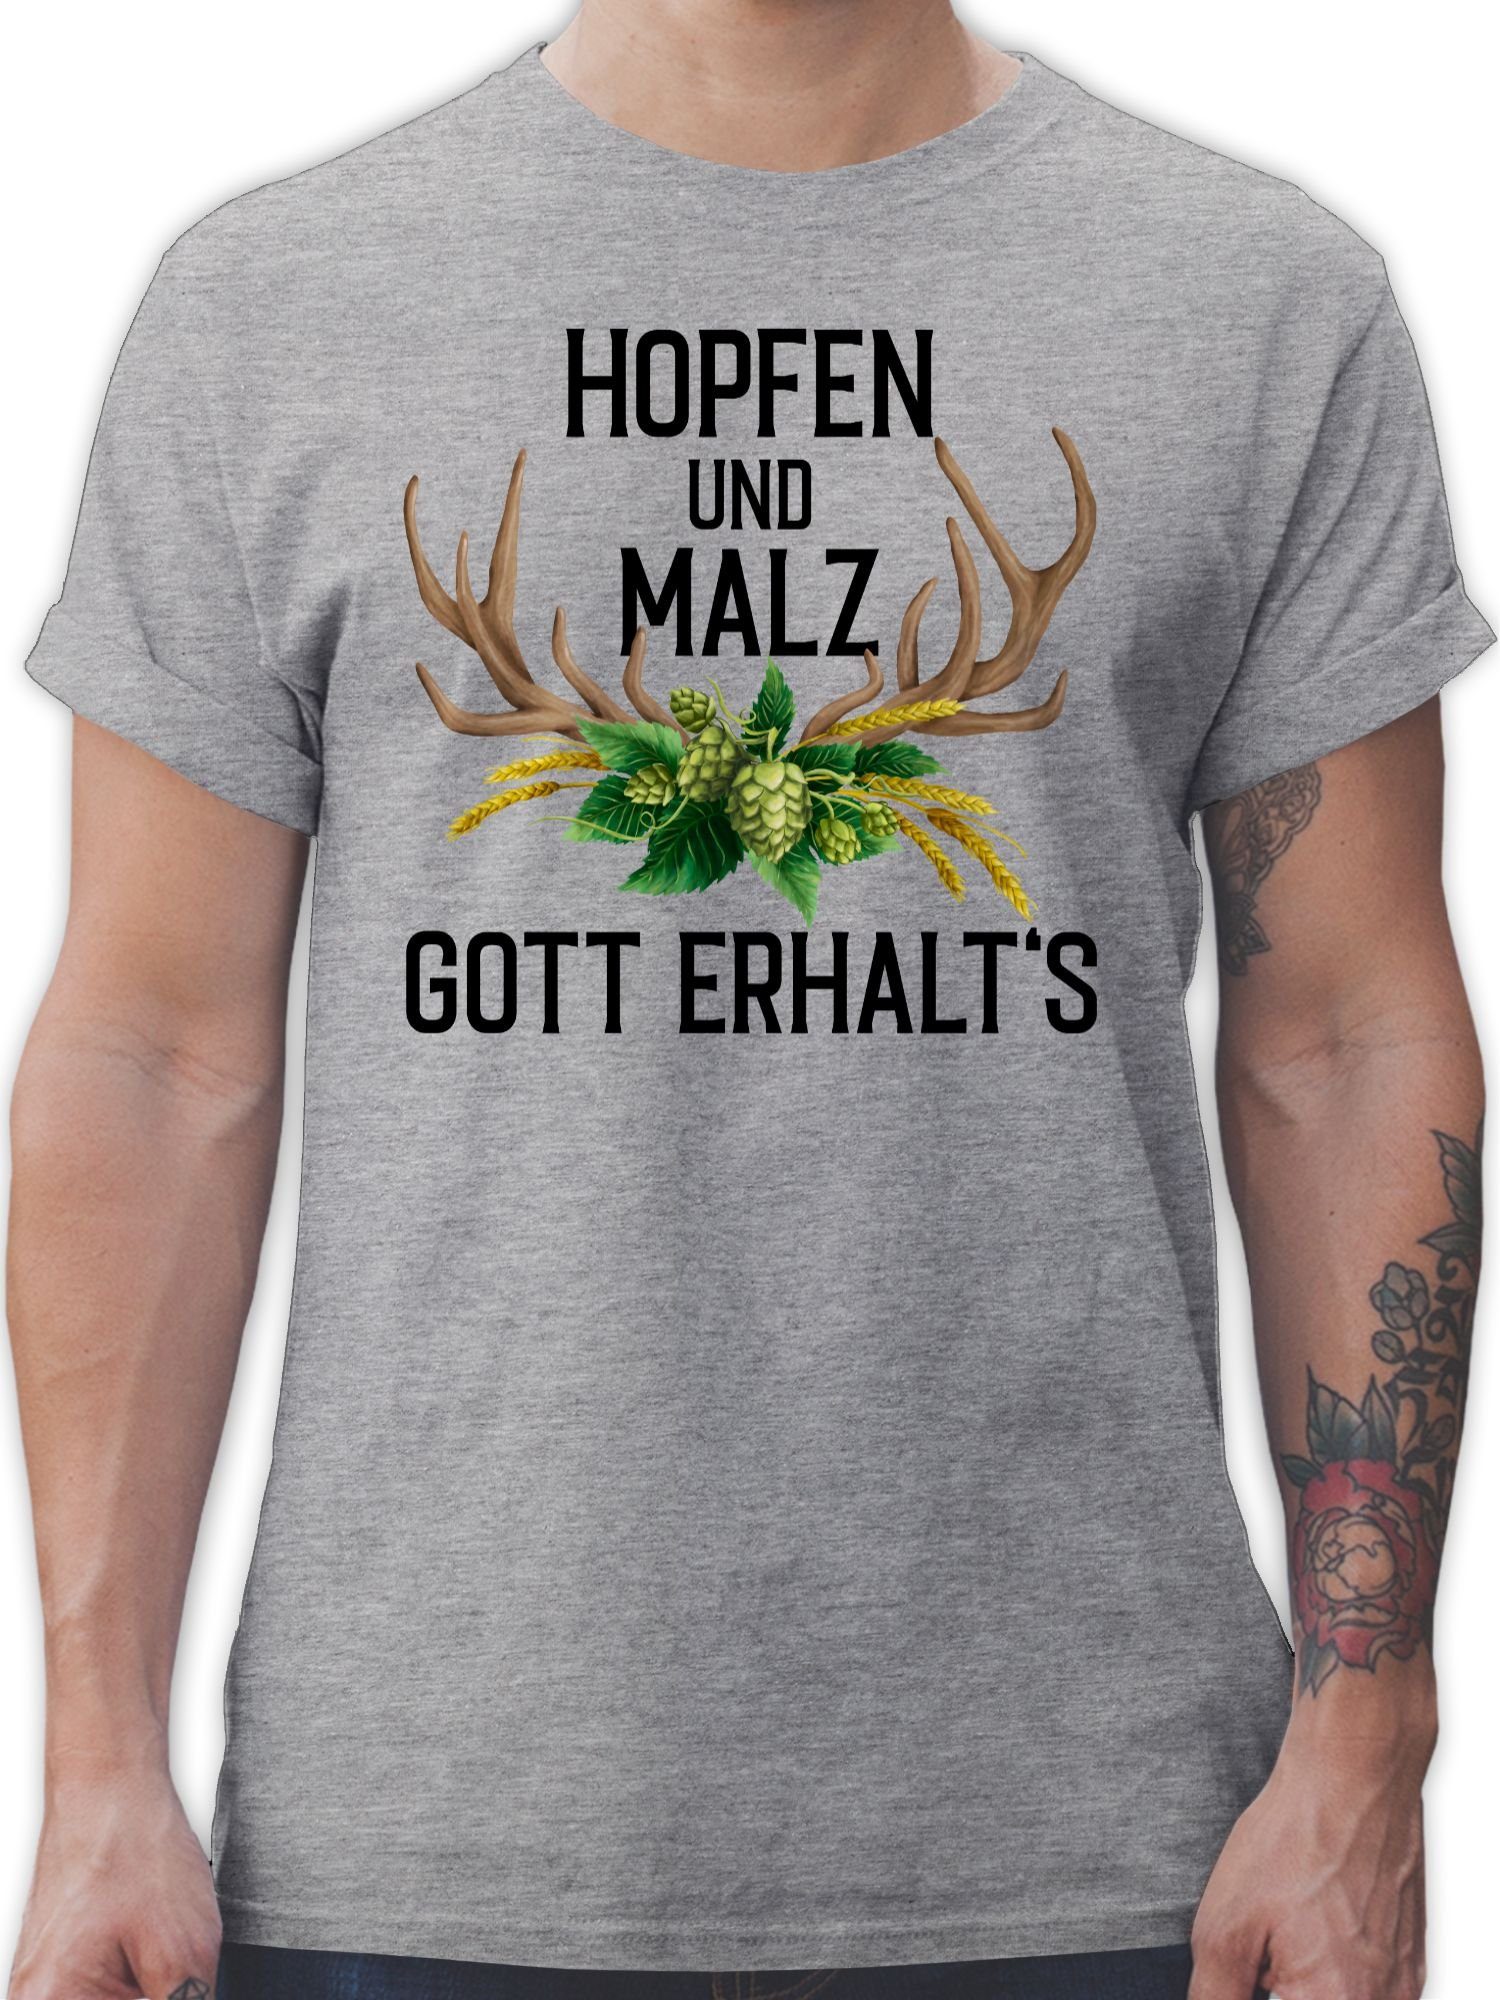 Shirtracer T-Shirt Hopfen und Malz Gott erhalt's - mit Geweih & Weizen Mode für Oktoberfest Herren 3 Grau meliert